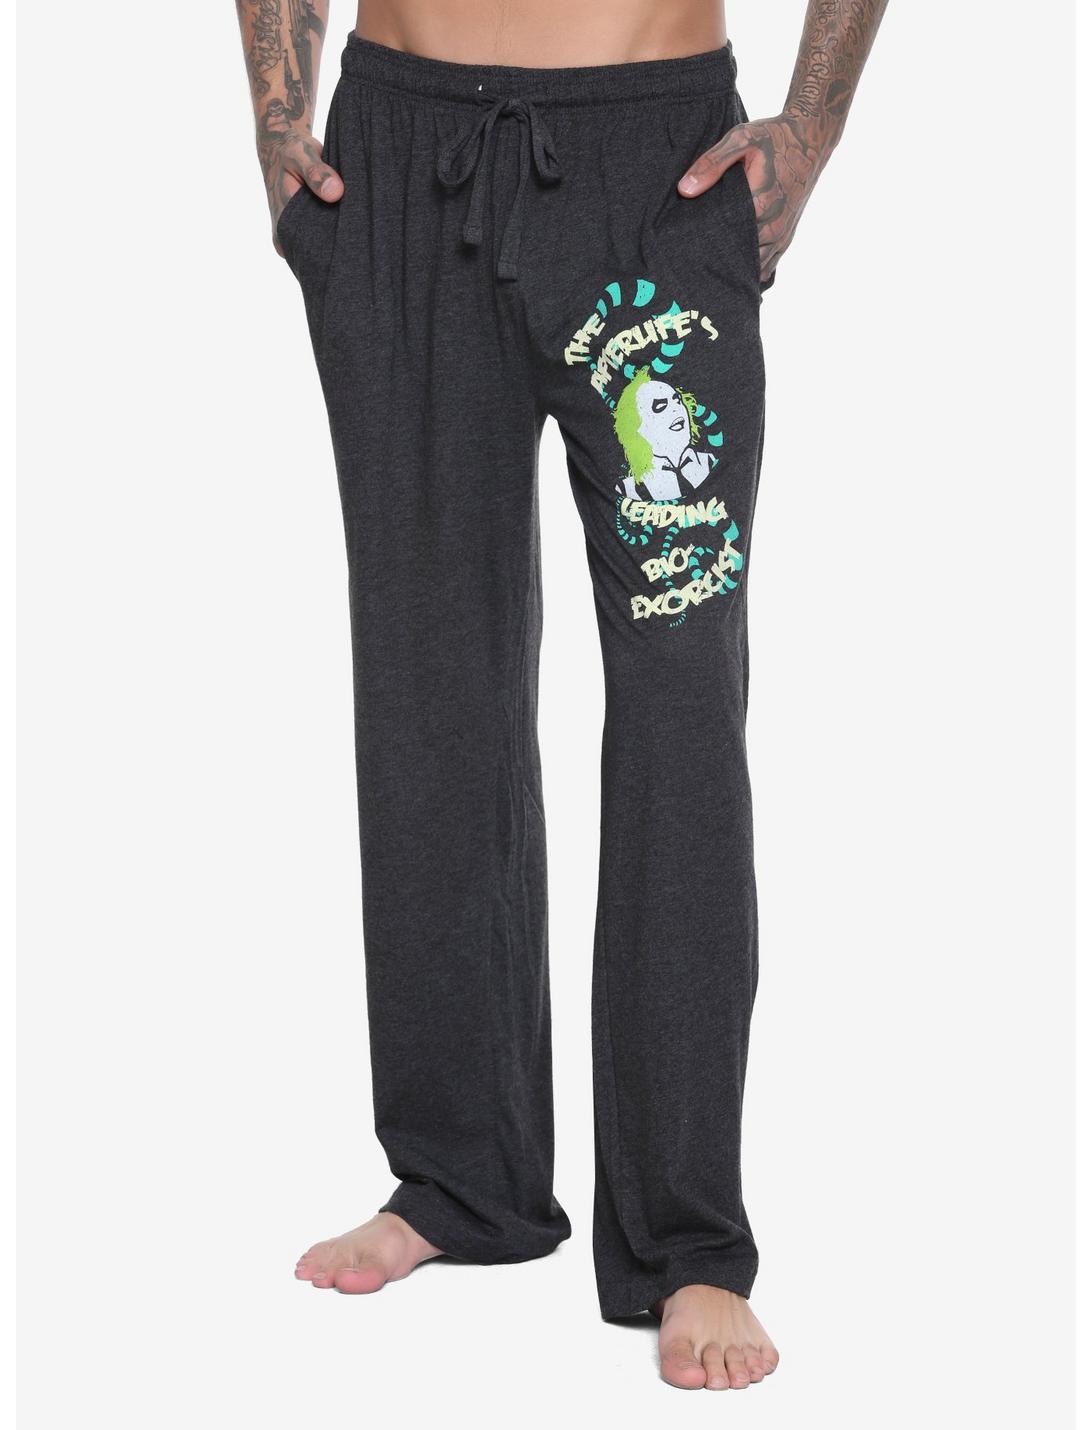 Beetlejuice Pajama Pants, BLACK, hi-res